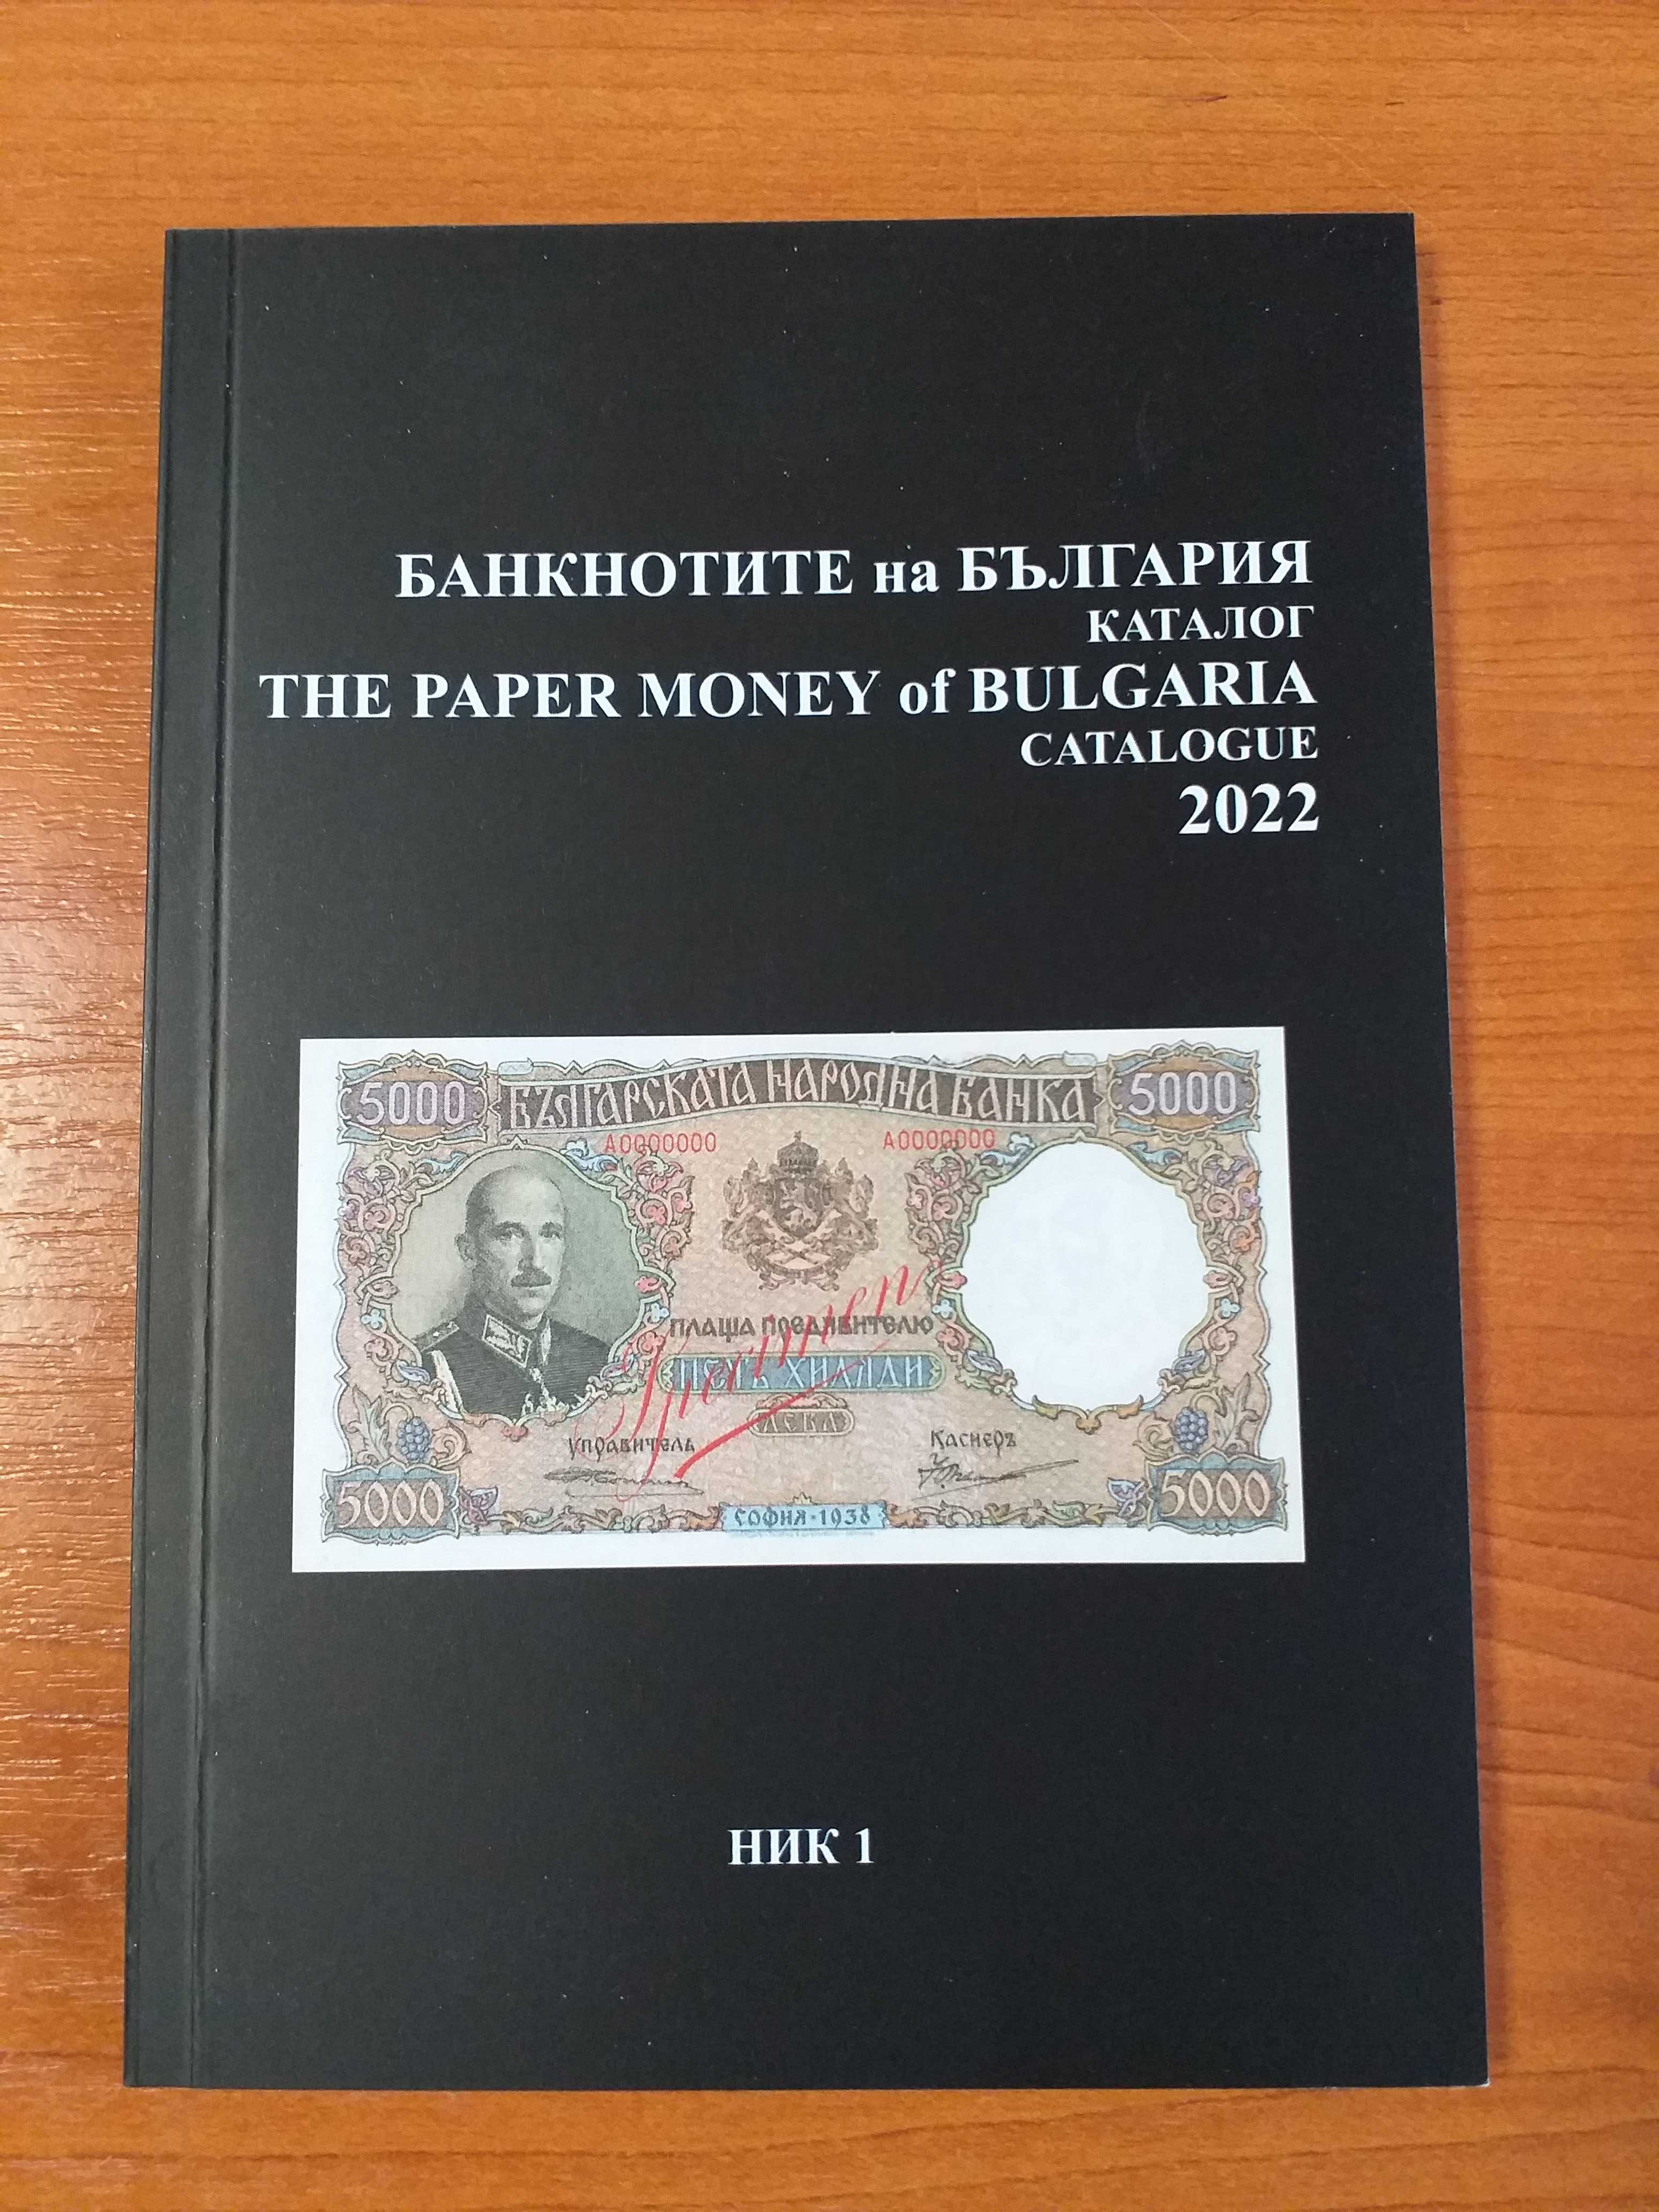 Каталог Банкнотите на България 2022 г., Г. Николов